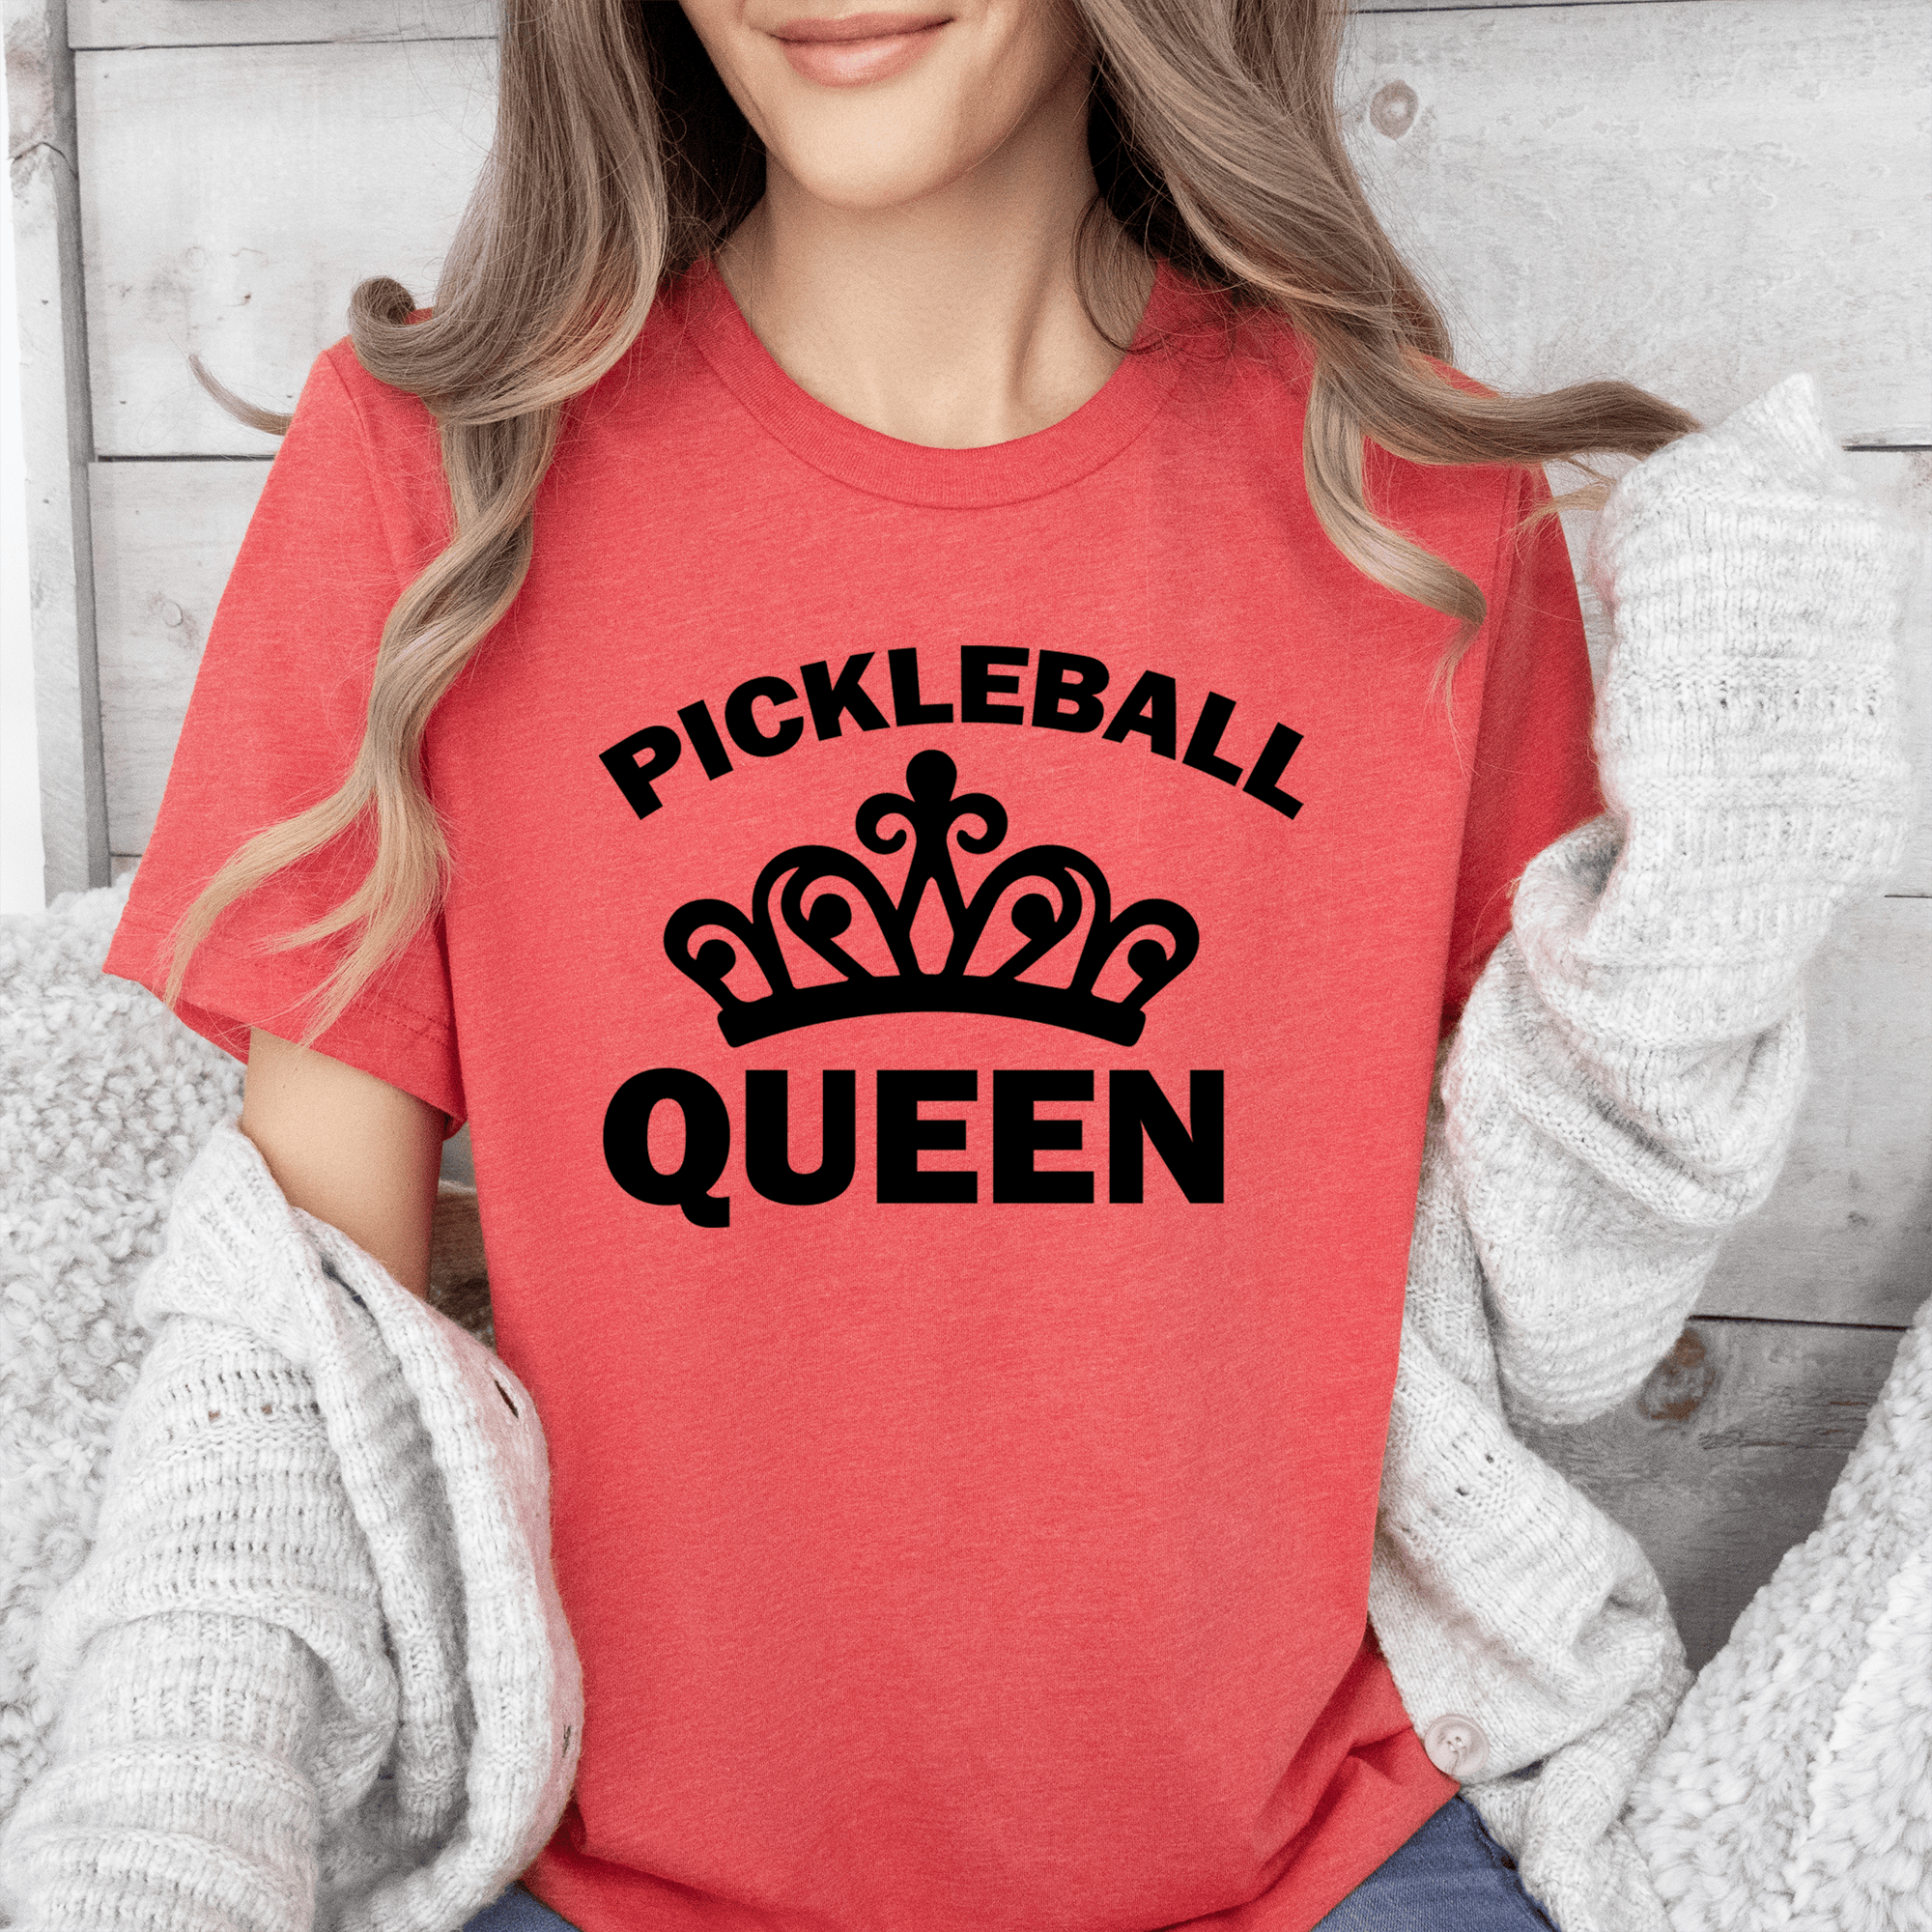 The Pickleball Queen Womens T Shirt